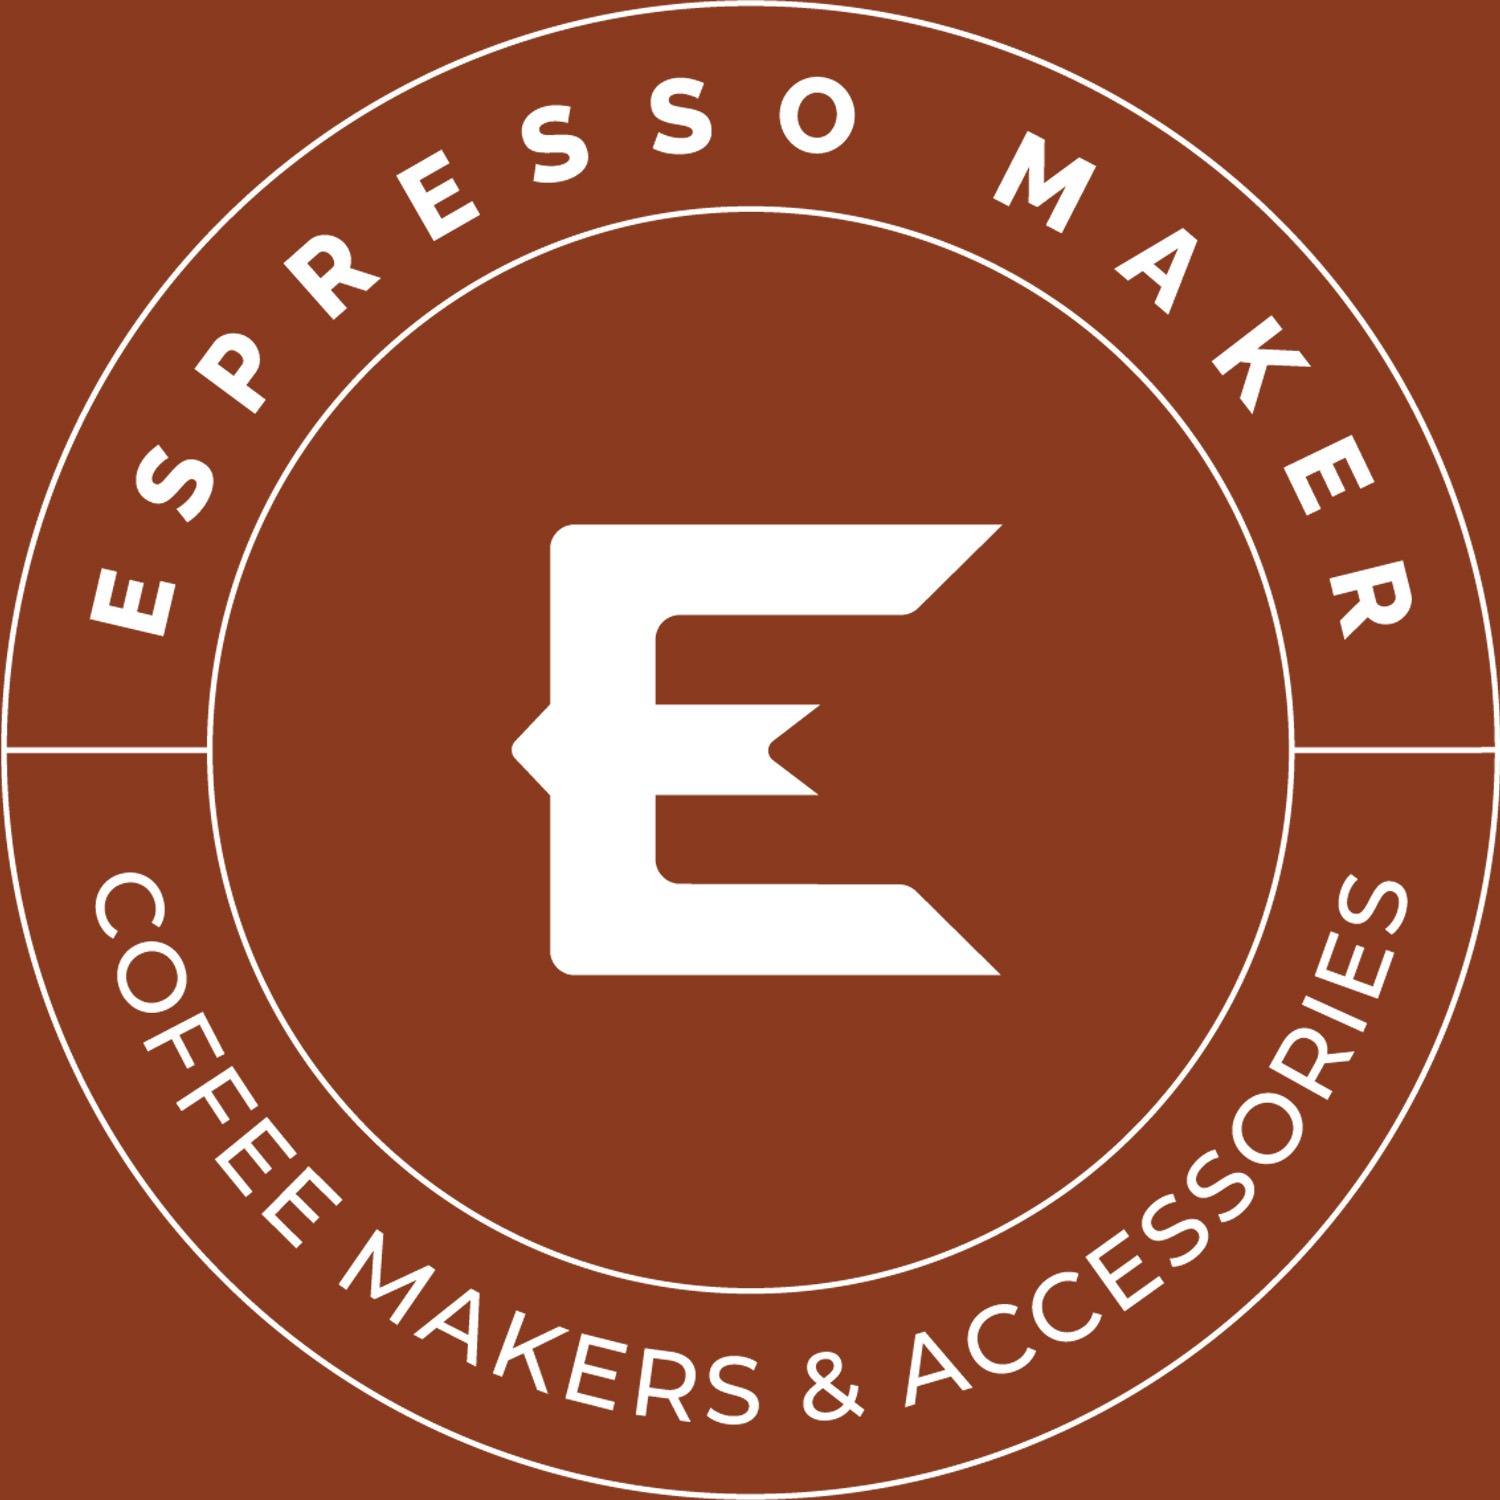 Espressomaker.vn